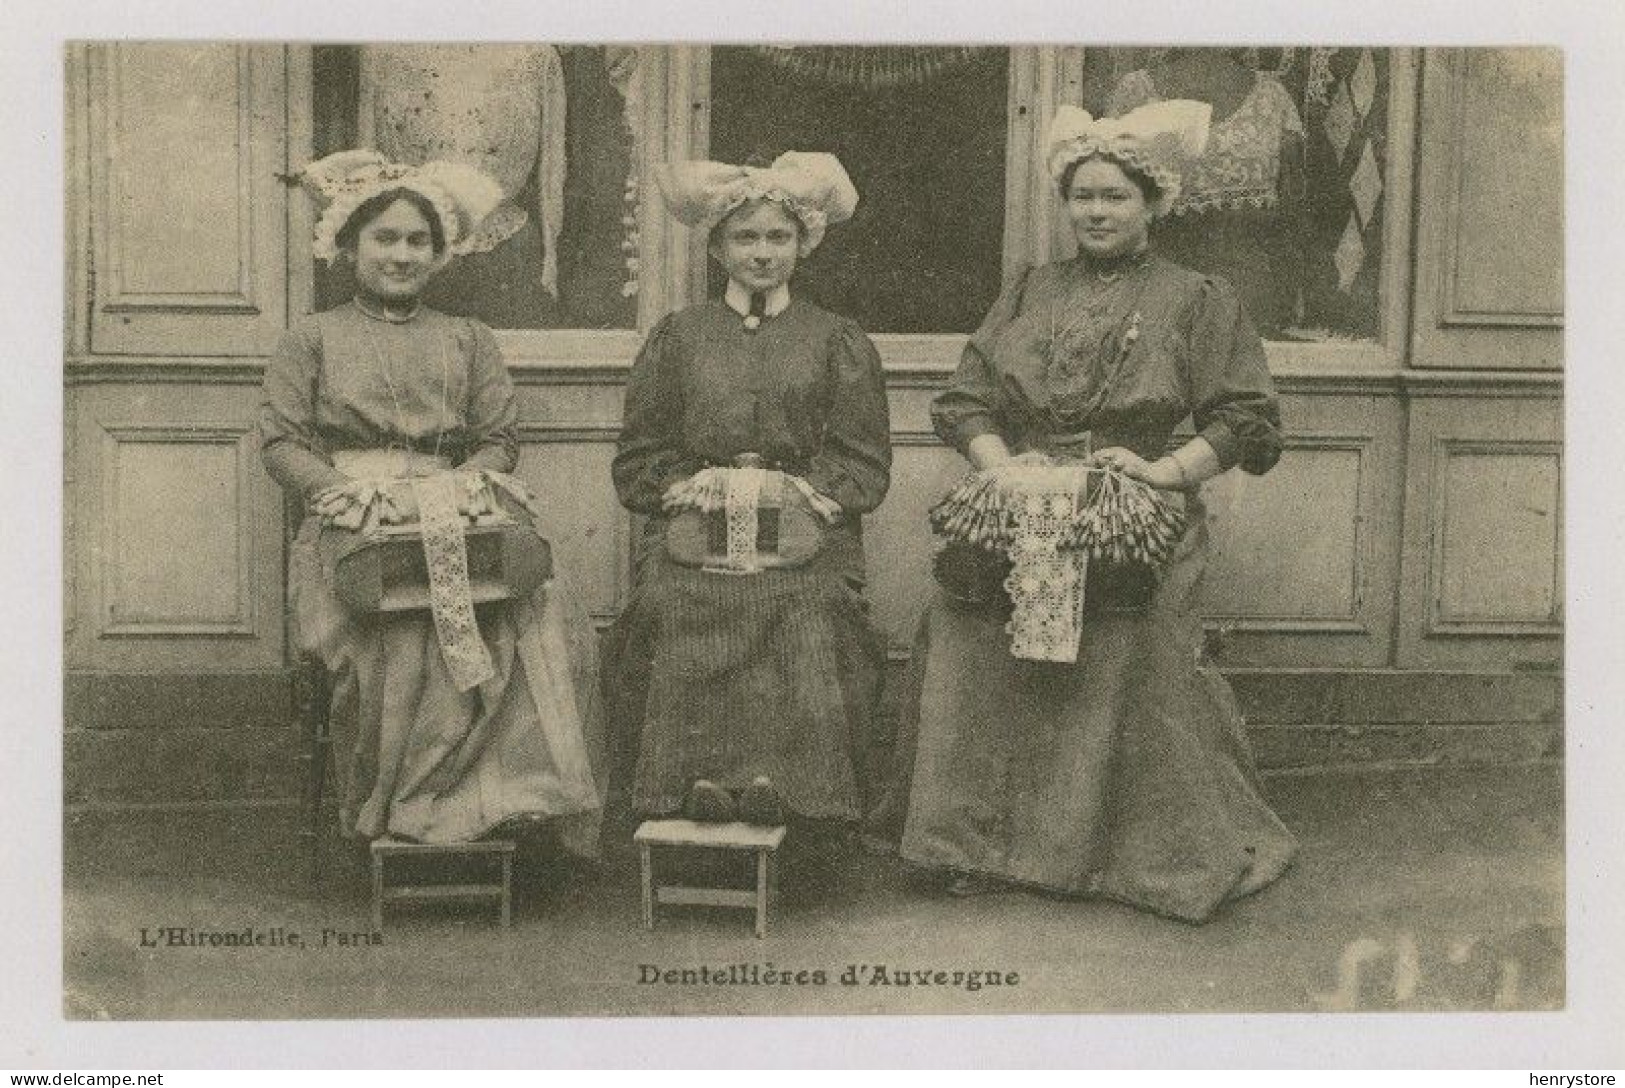 TYPES D'AUVERGNE : 3 Dentellières D'Auvergne, 1925 (z4173) - Auvergne Types D'Auvergne